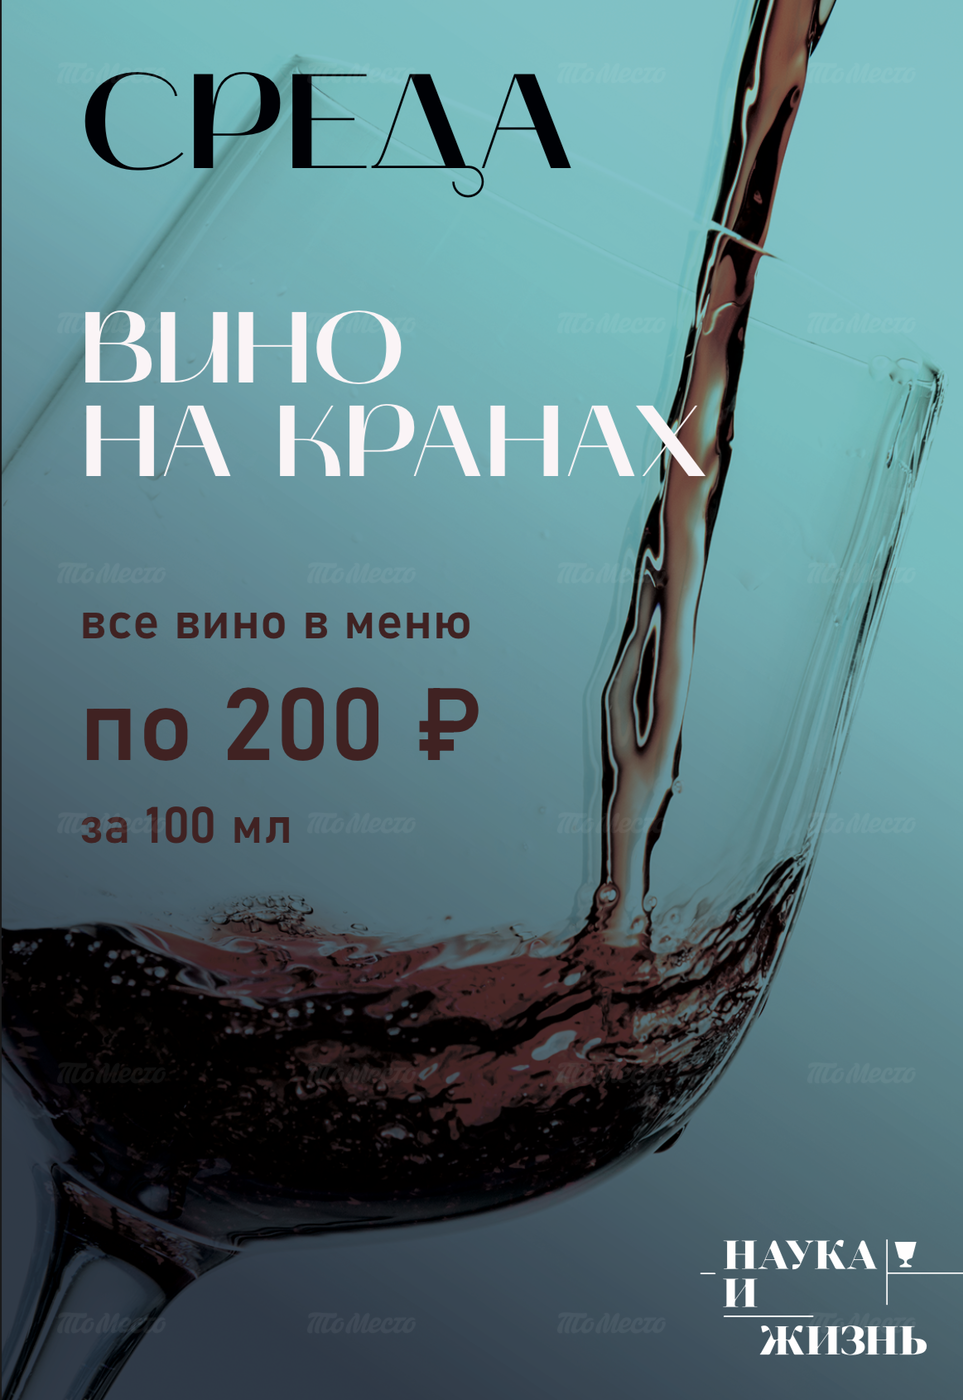 Энонапитки на кранах: 100 мл — 200 ₽